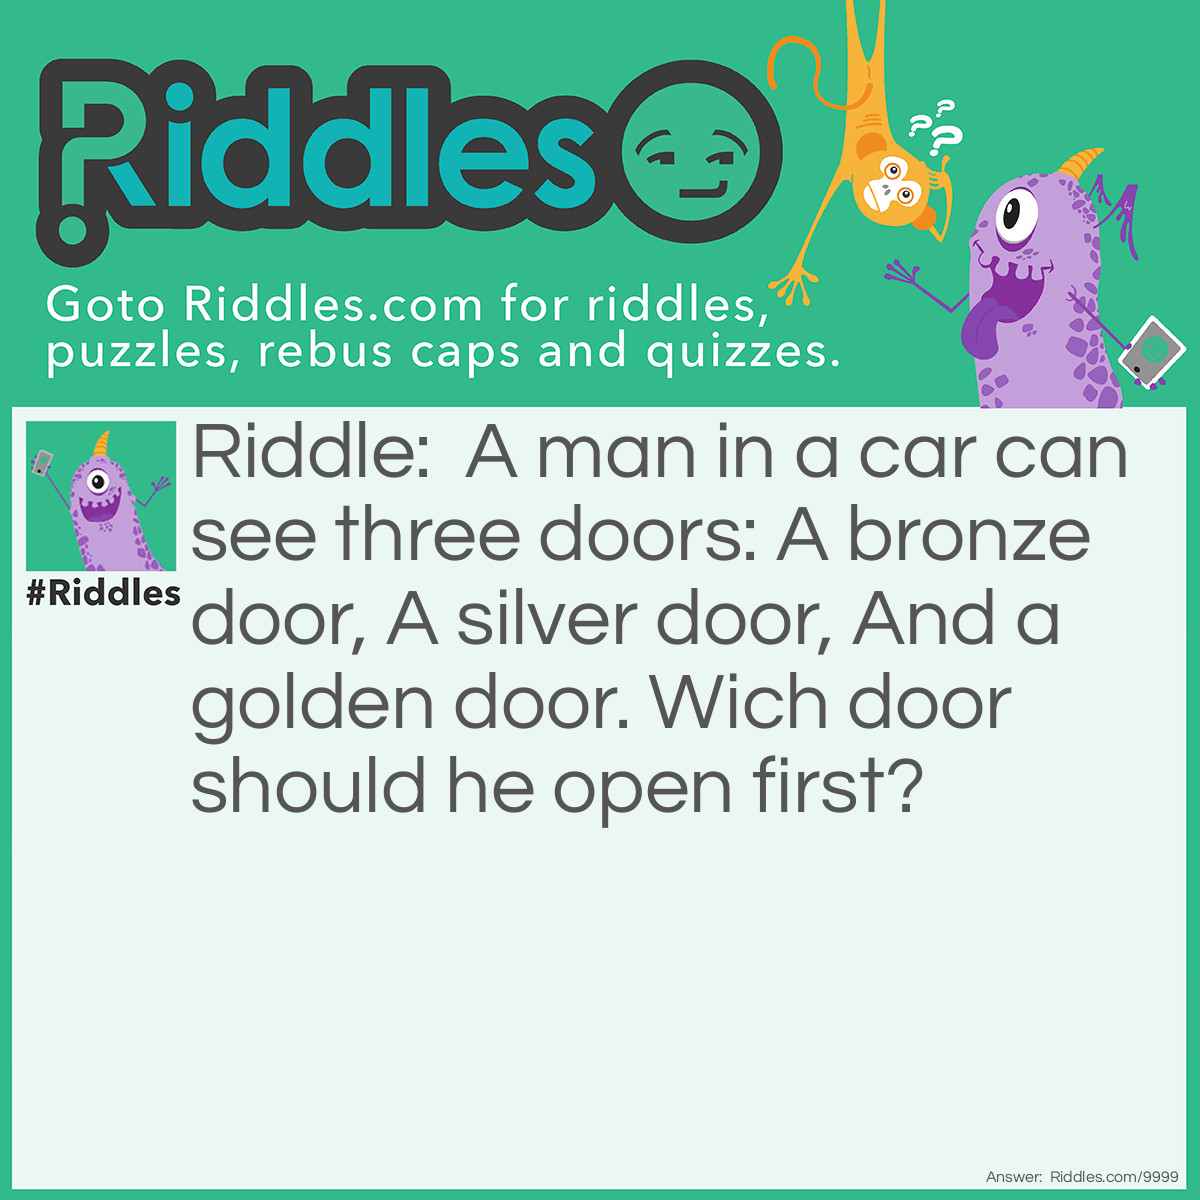 Riddle: A man in a car can see three doors: A bronze door, A silver door, And a golden door. Wich door should he open first? Answer: His car door.